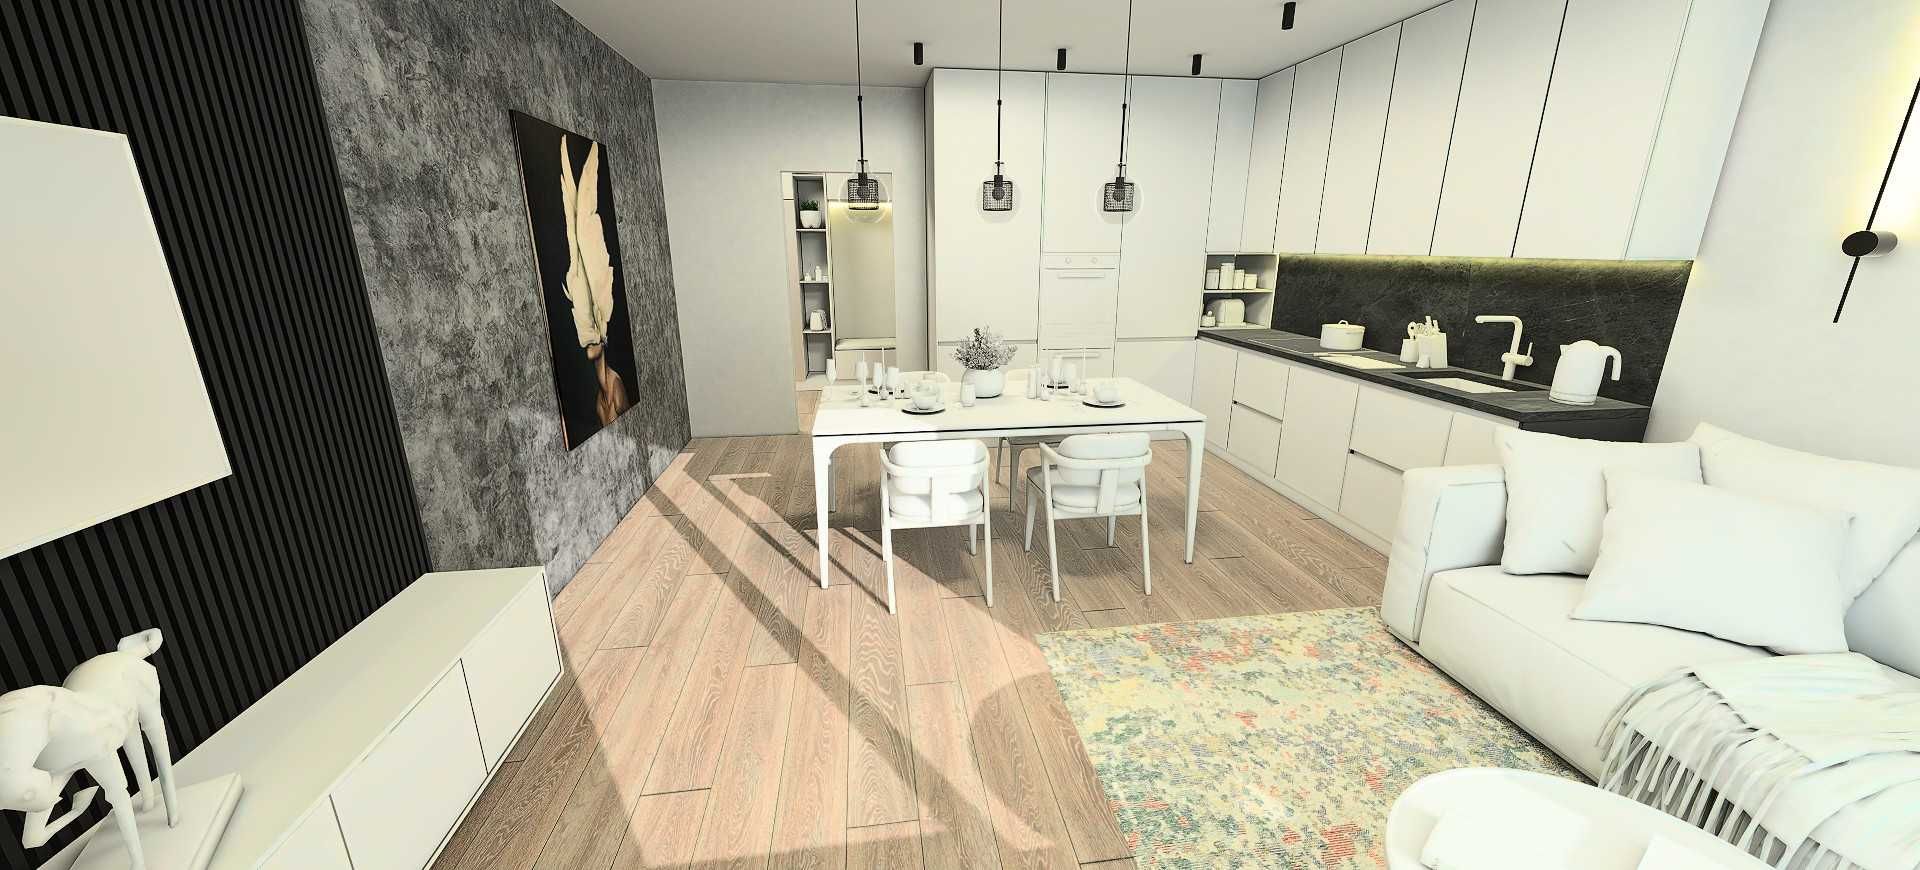 Продам квартиру 60м2 з просторною кухнею-вітальнею в Ірпені!